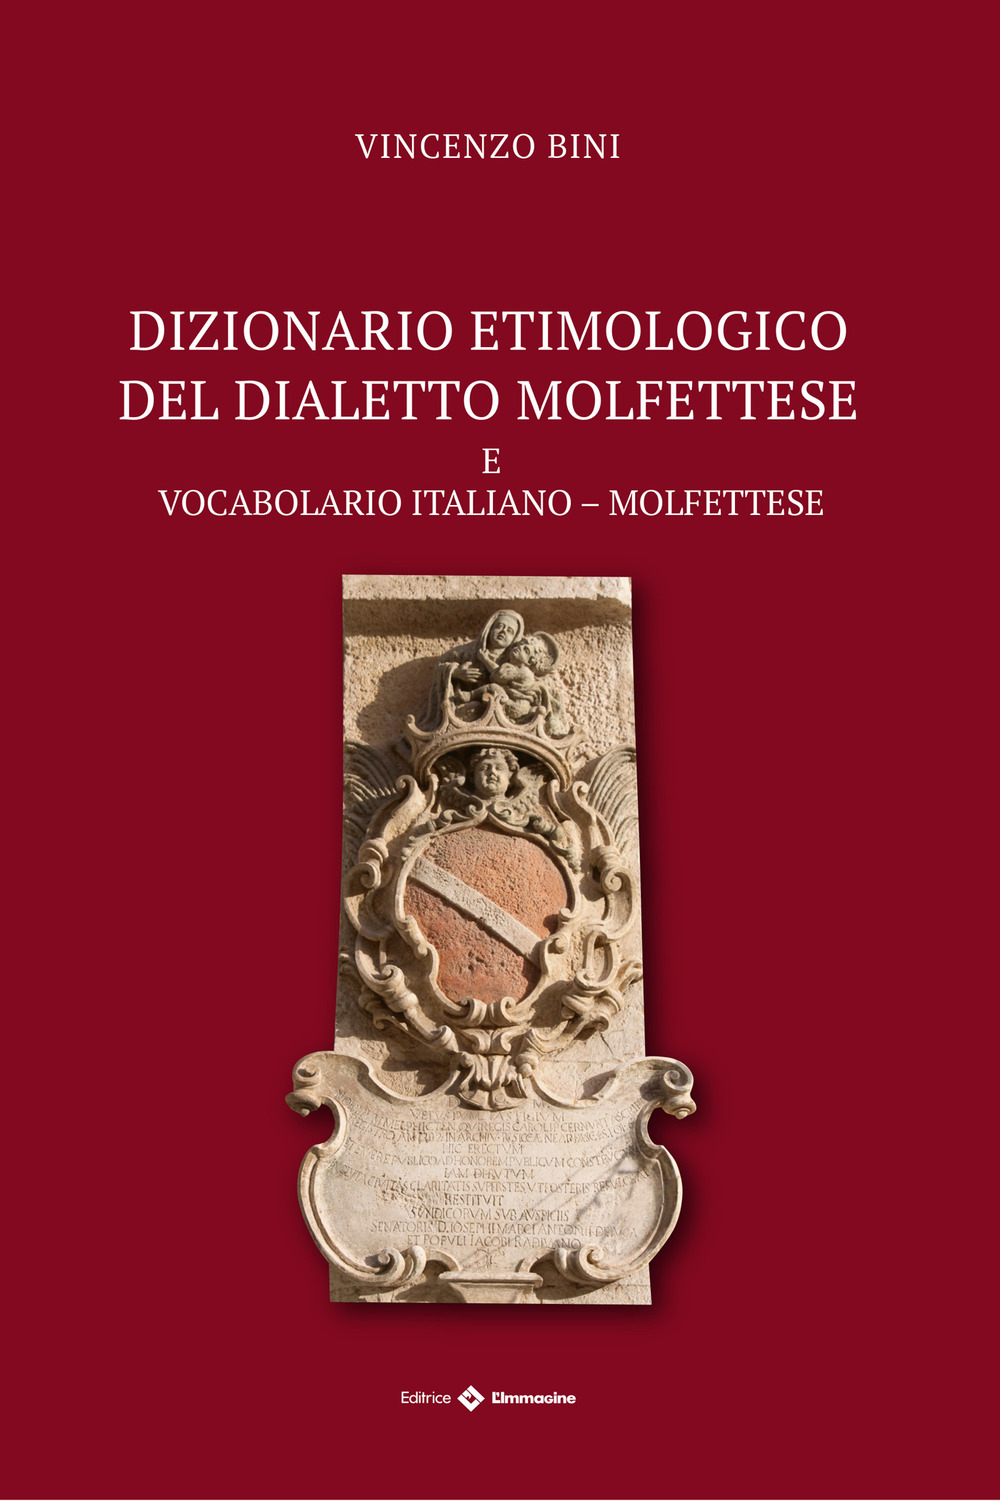 Dizionario etimologico del dialetto molfettese. Vocabolario italiano-molfettese